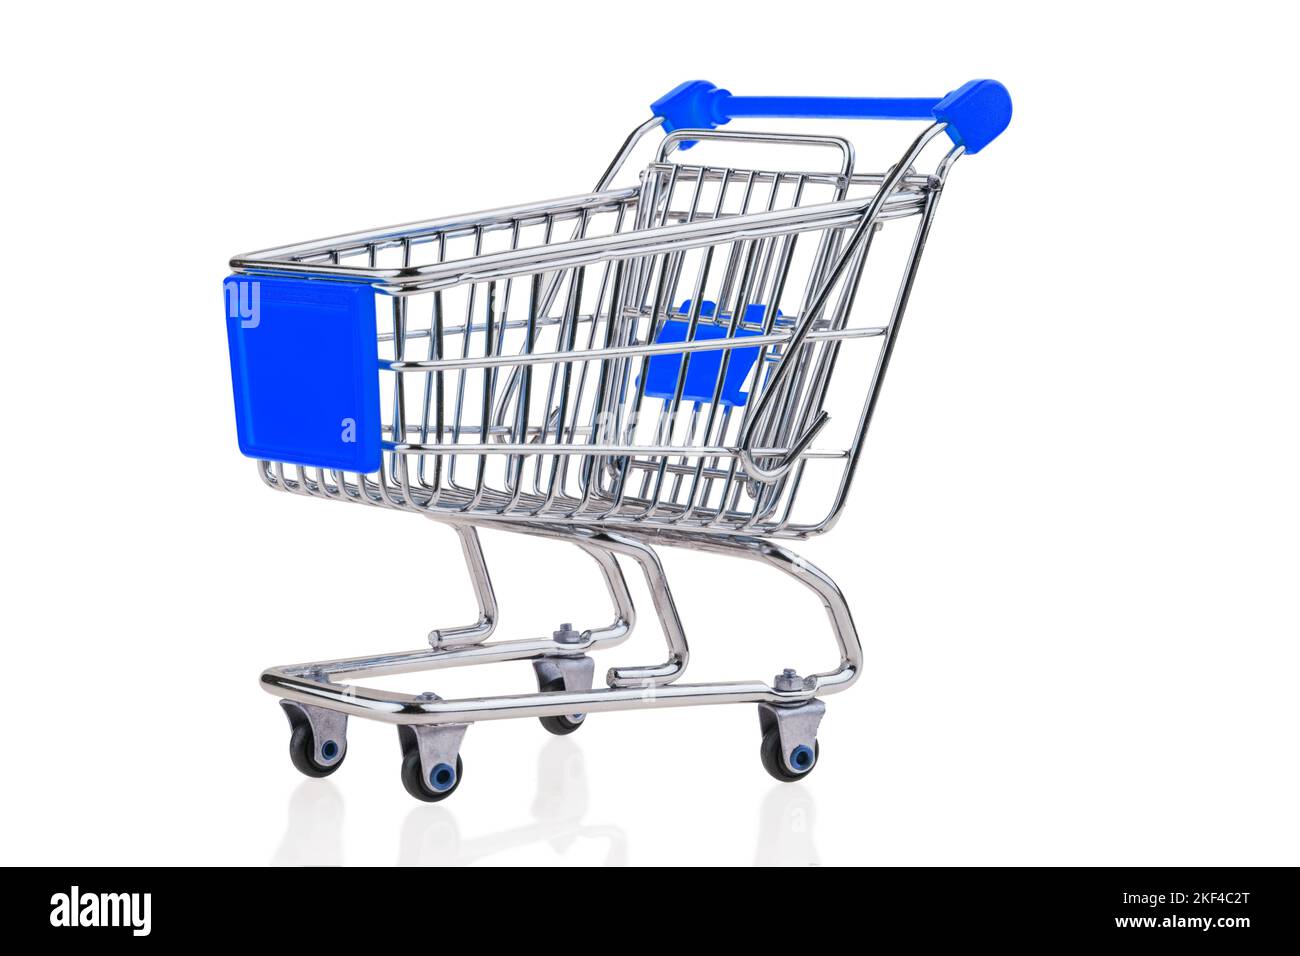 Ein leerer Einkaufswagen auf weißem Hintergrund. Symbolfoto für Einkaufen, blaue Werbefläche, Stock Photo